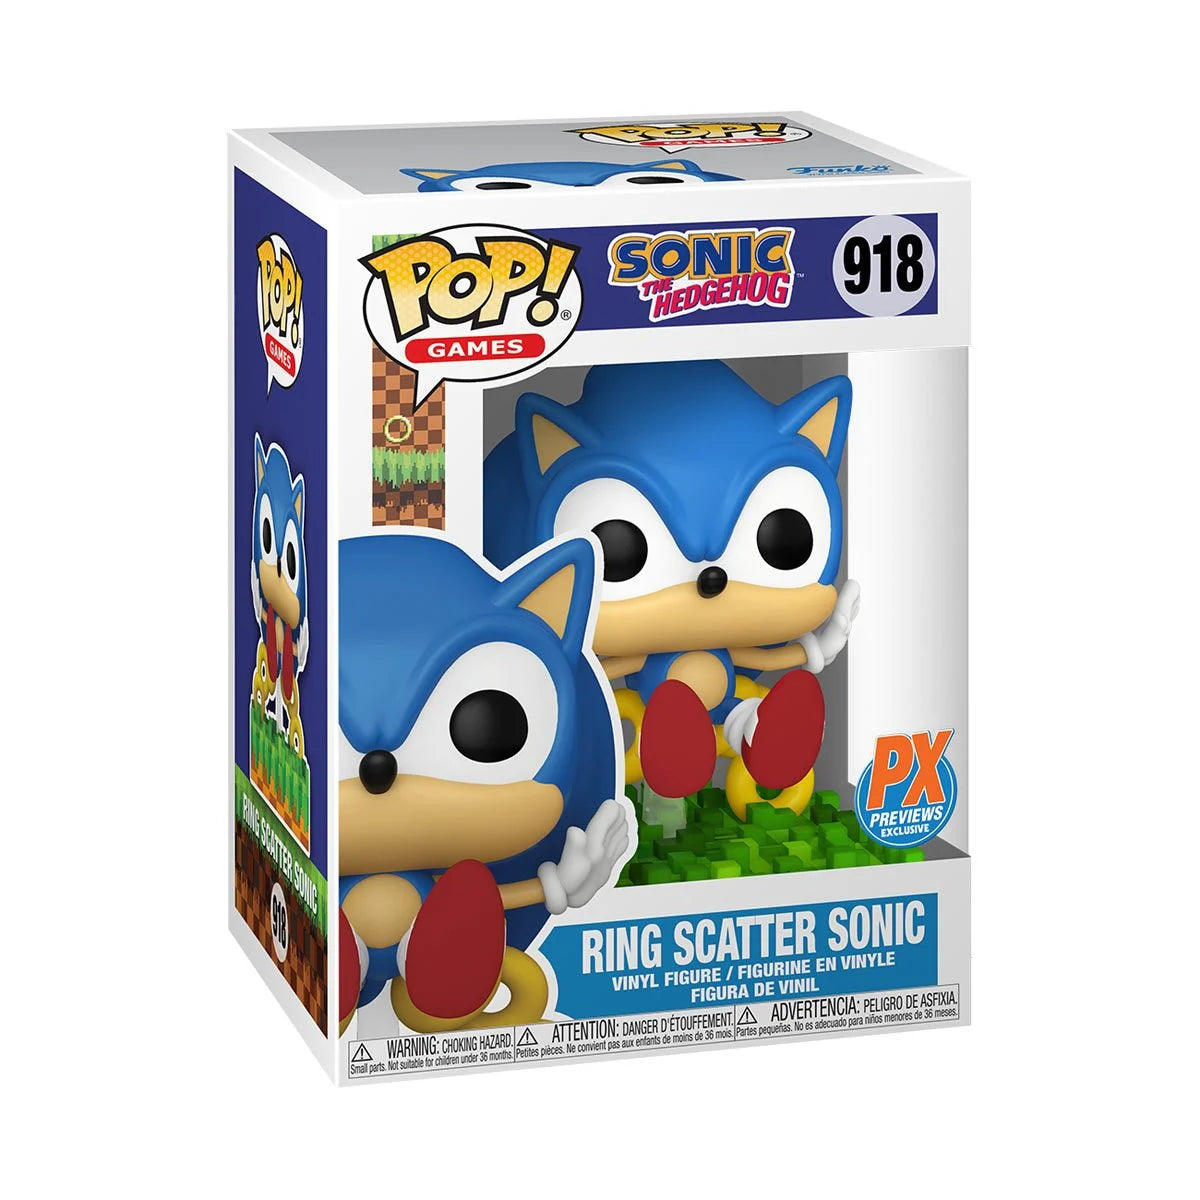 [Pre-venta] Funko Pop Sonic - Sonic con Anillos exclusivo PX #918